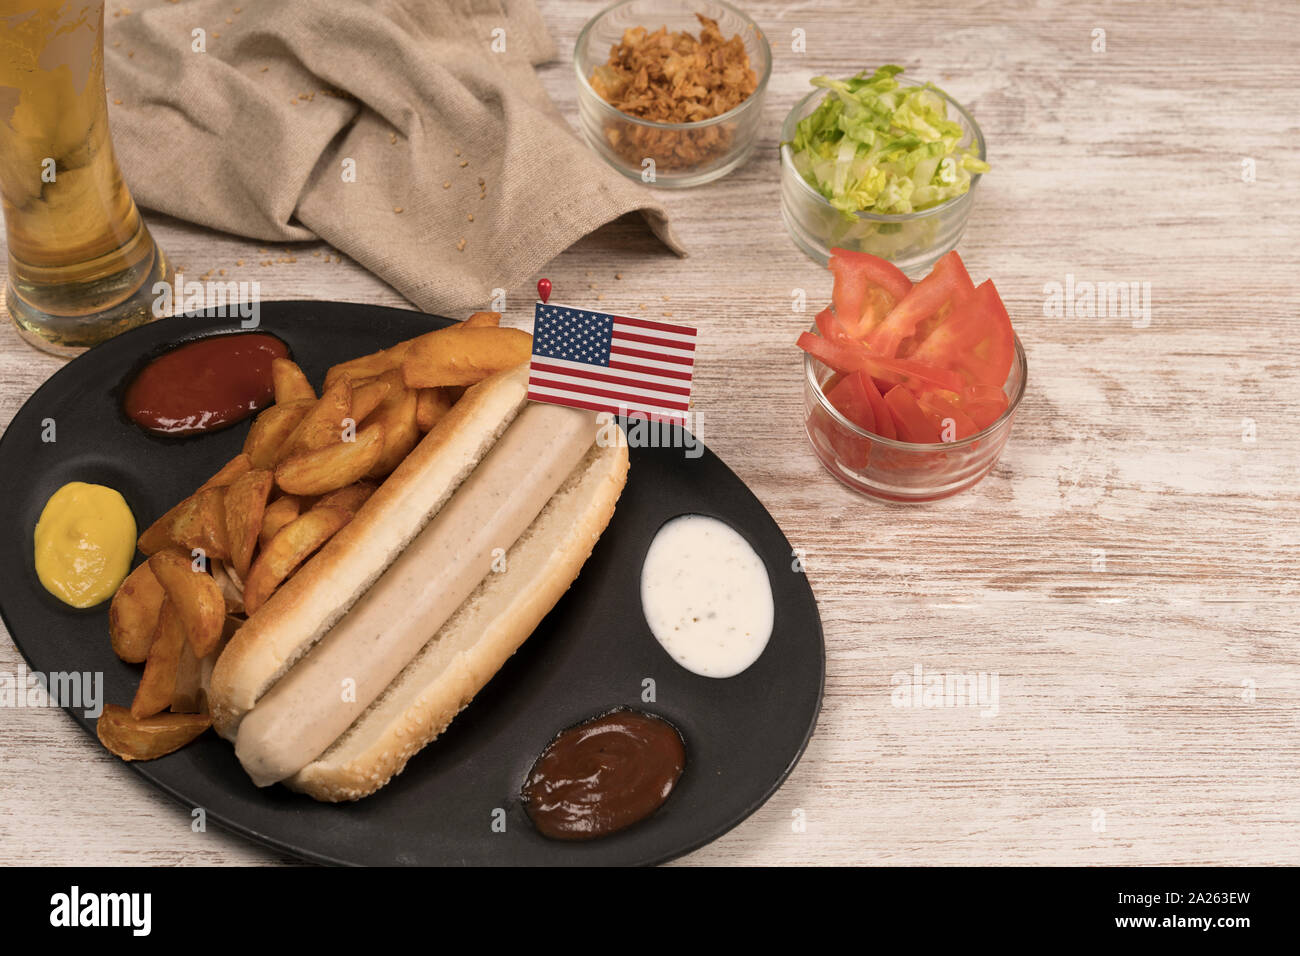 Perro caliente casero con salchichas blancas en bandeja con diversos condimentos y la bandera americana visto desde arriba Foto de stock